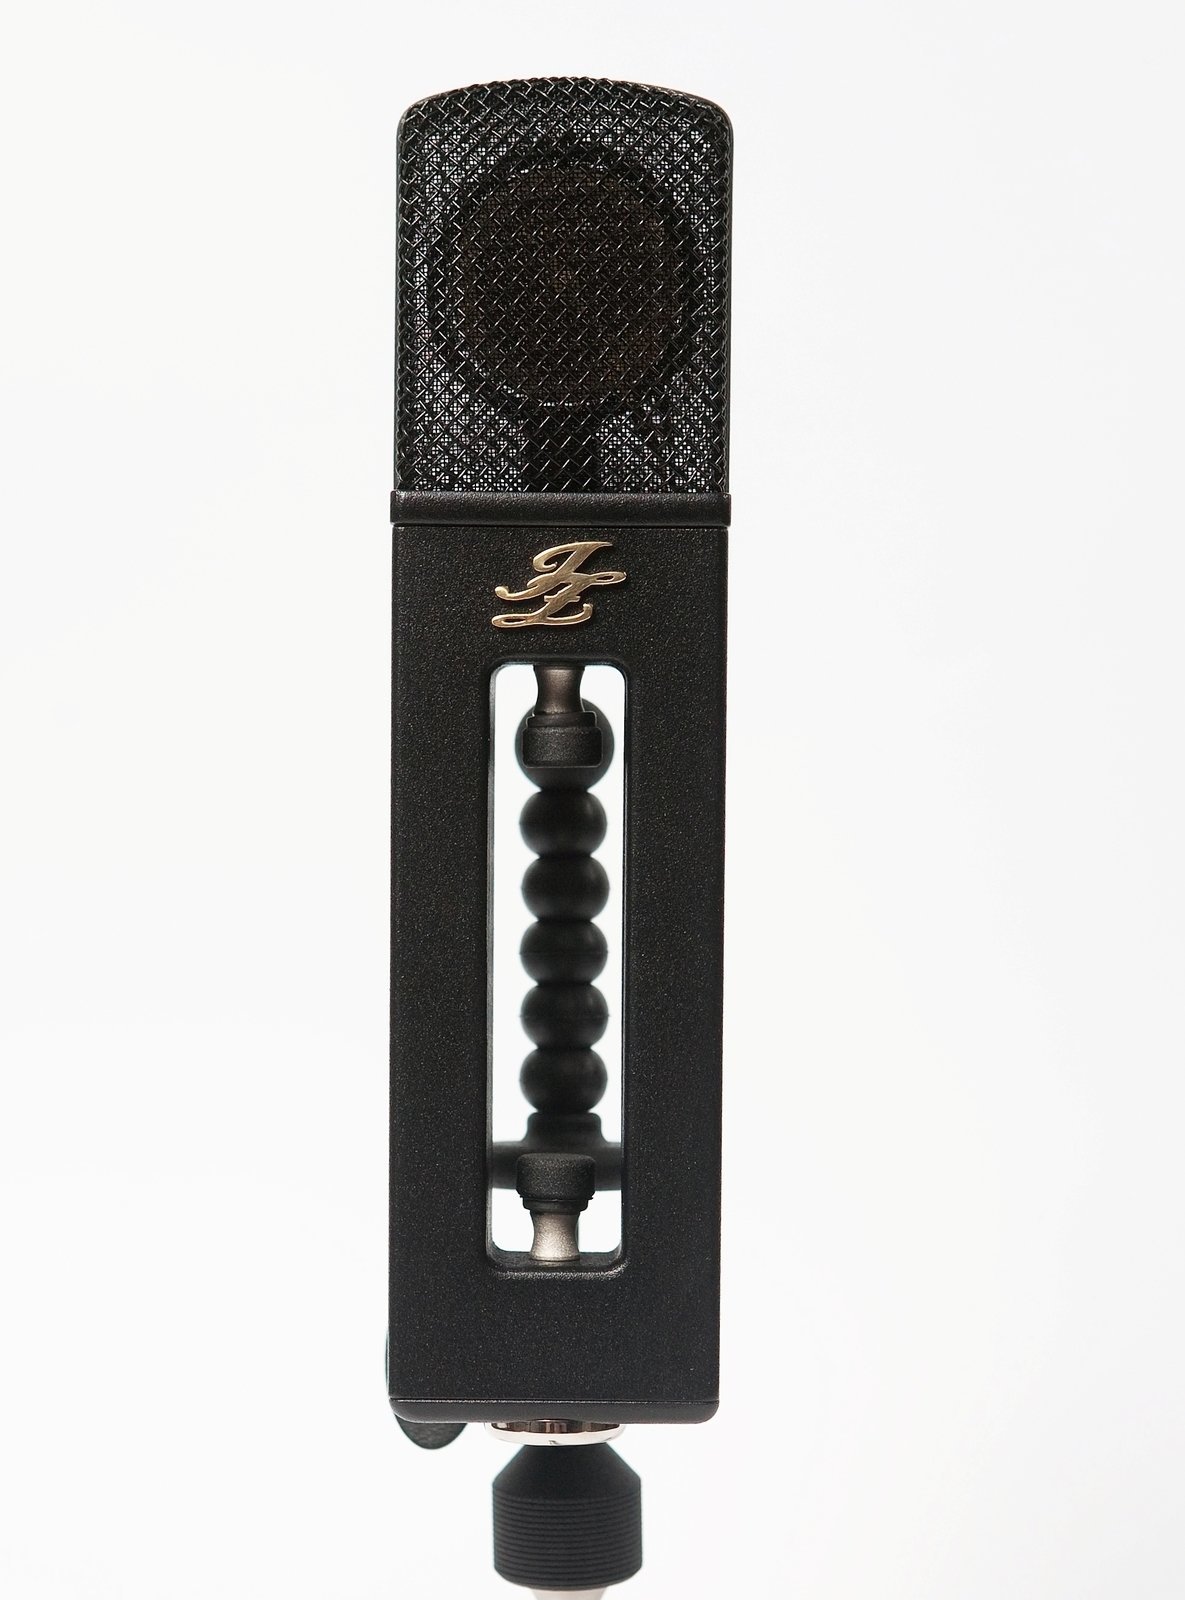 Microfon cu condensator pentru studio JZ Microphones BH-2 Black Hole